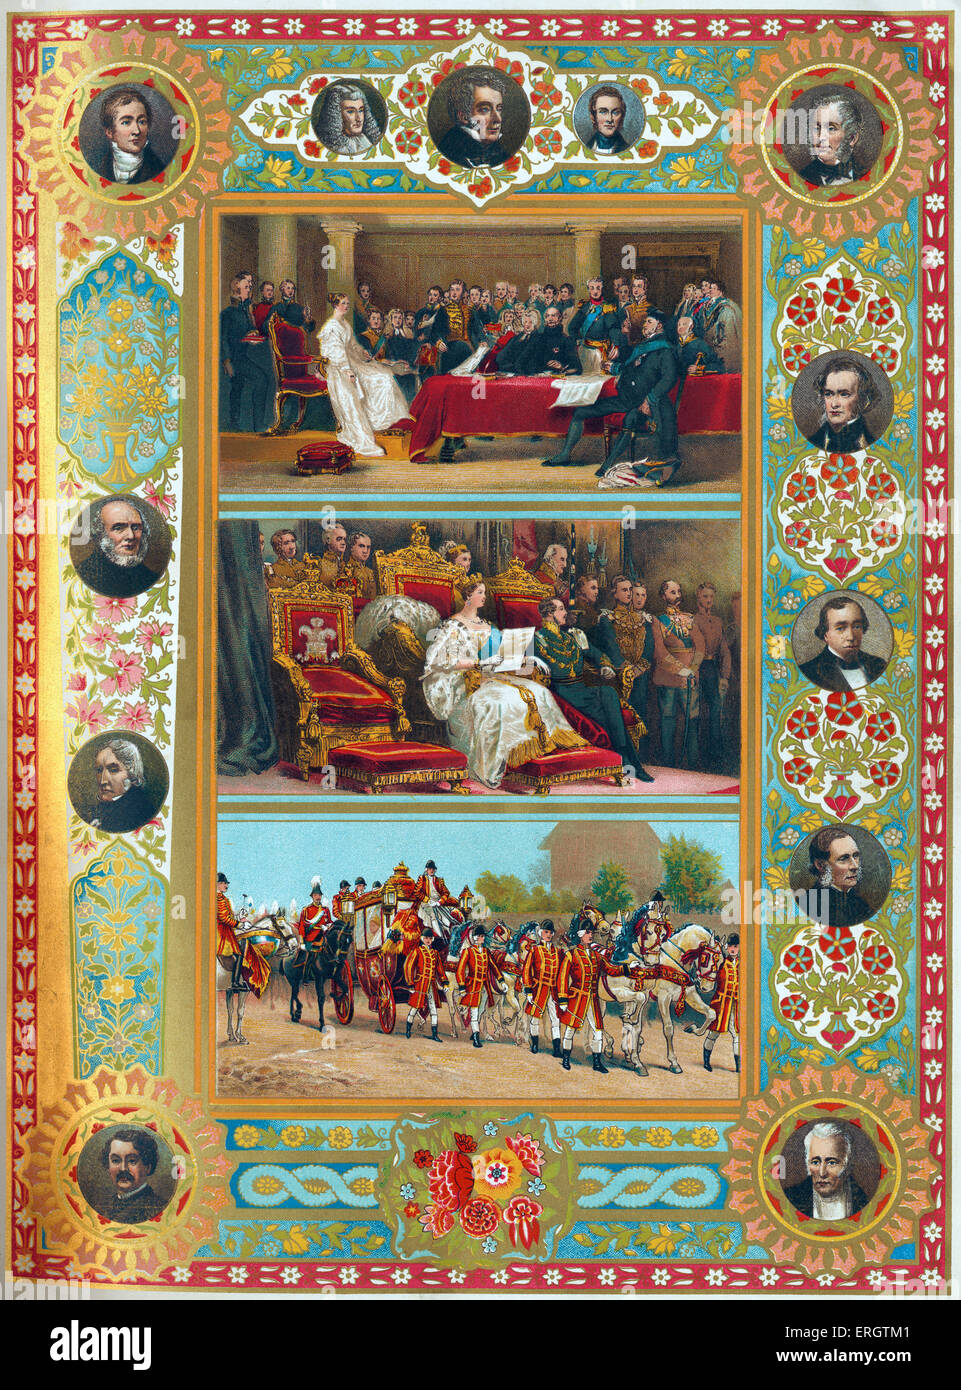 Königin Victoria von England - Portraits ihrer Majestät bei ihrem ersten Rat, bei ihrem ersten Parlament Eröffnung und im royal Stockfoto